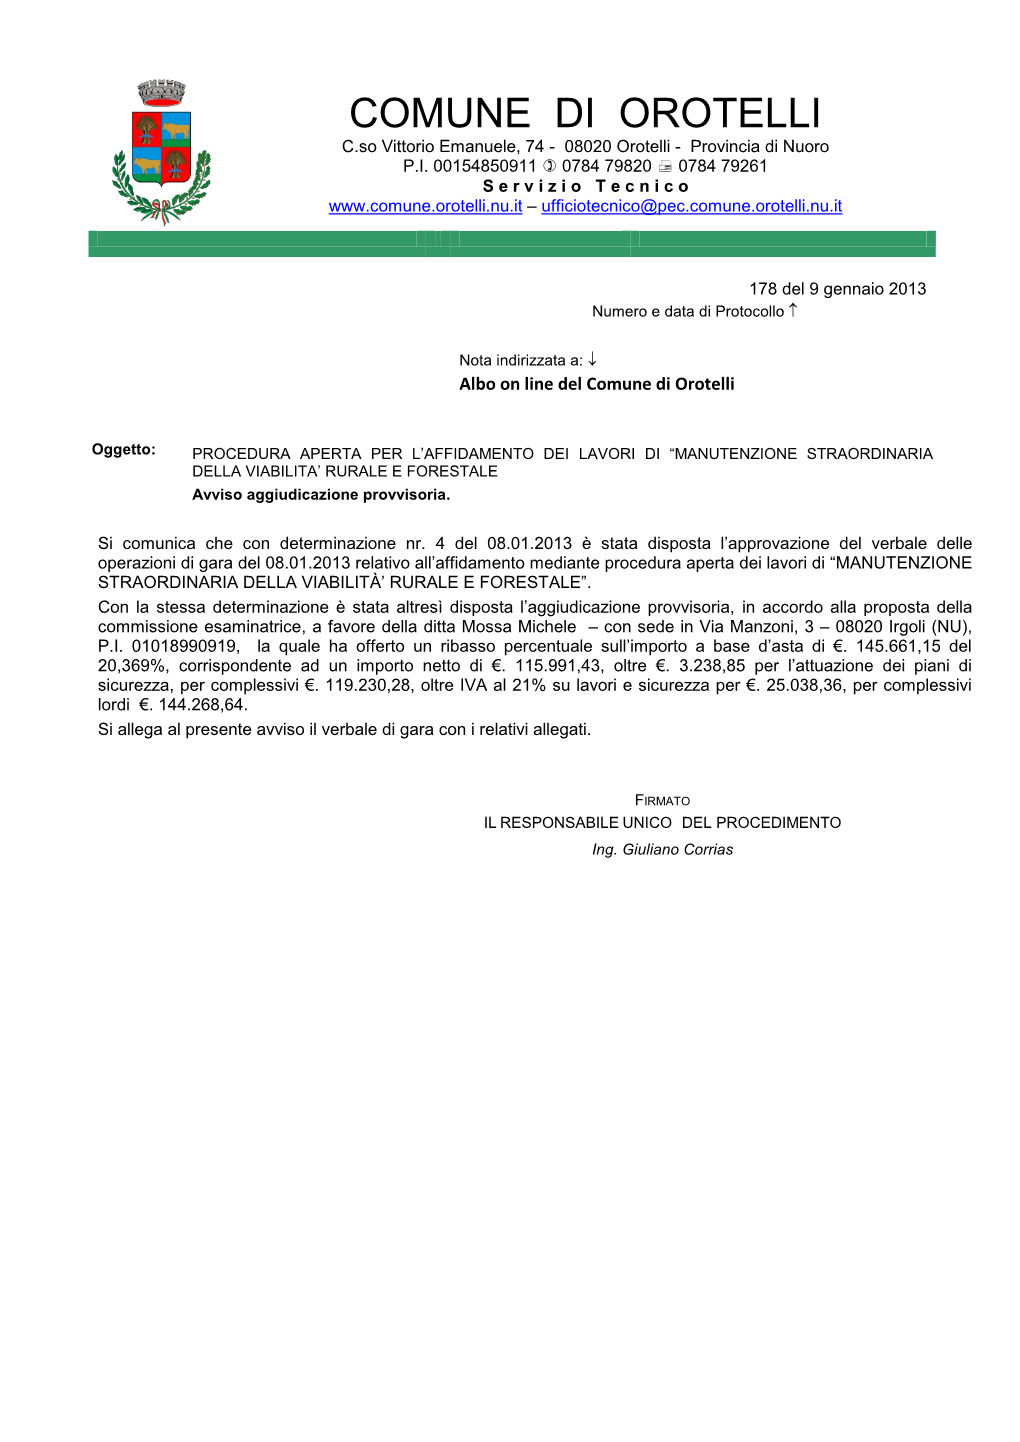 COMUNE DI OROTELLI C.So Vittorio Emanuele, 74 - 08020 Orotelli - Provincia Di Nuoro P.I